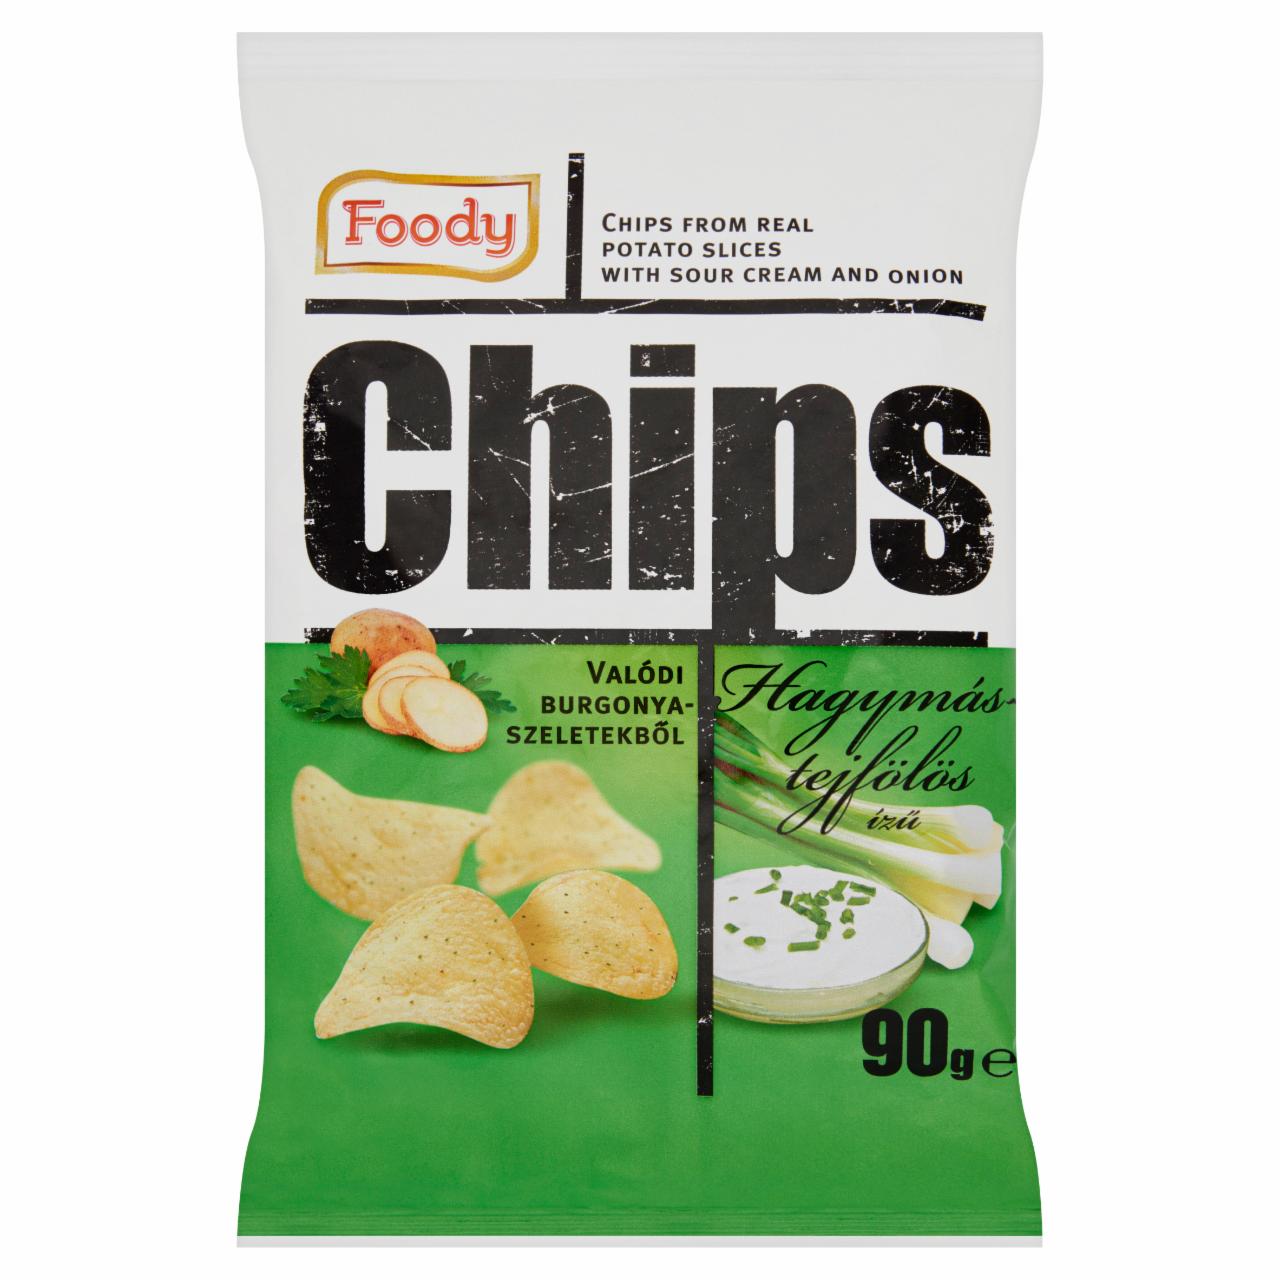 Képek - Foody hagymás-tejfölös ízű chips valódi burgonyaszeletekből 90 g